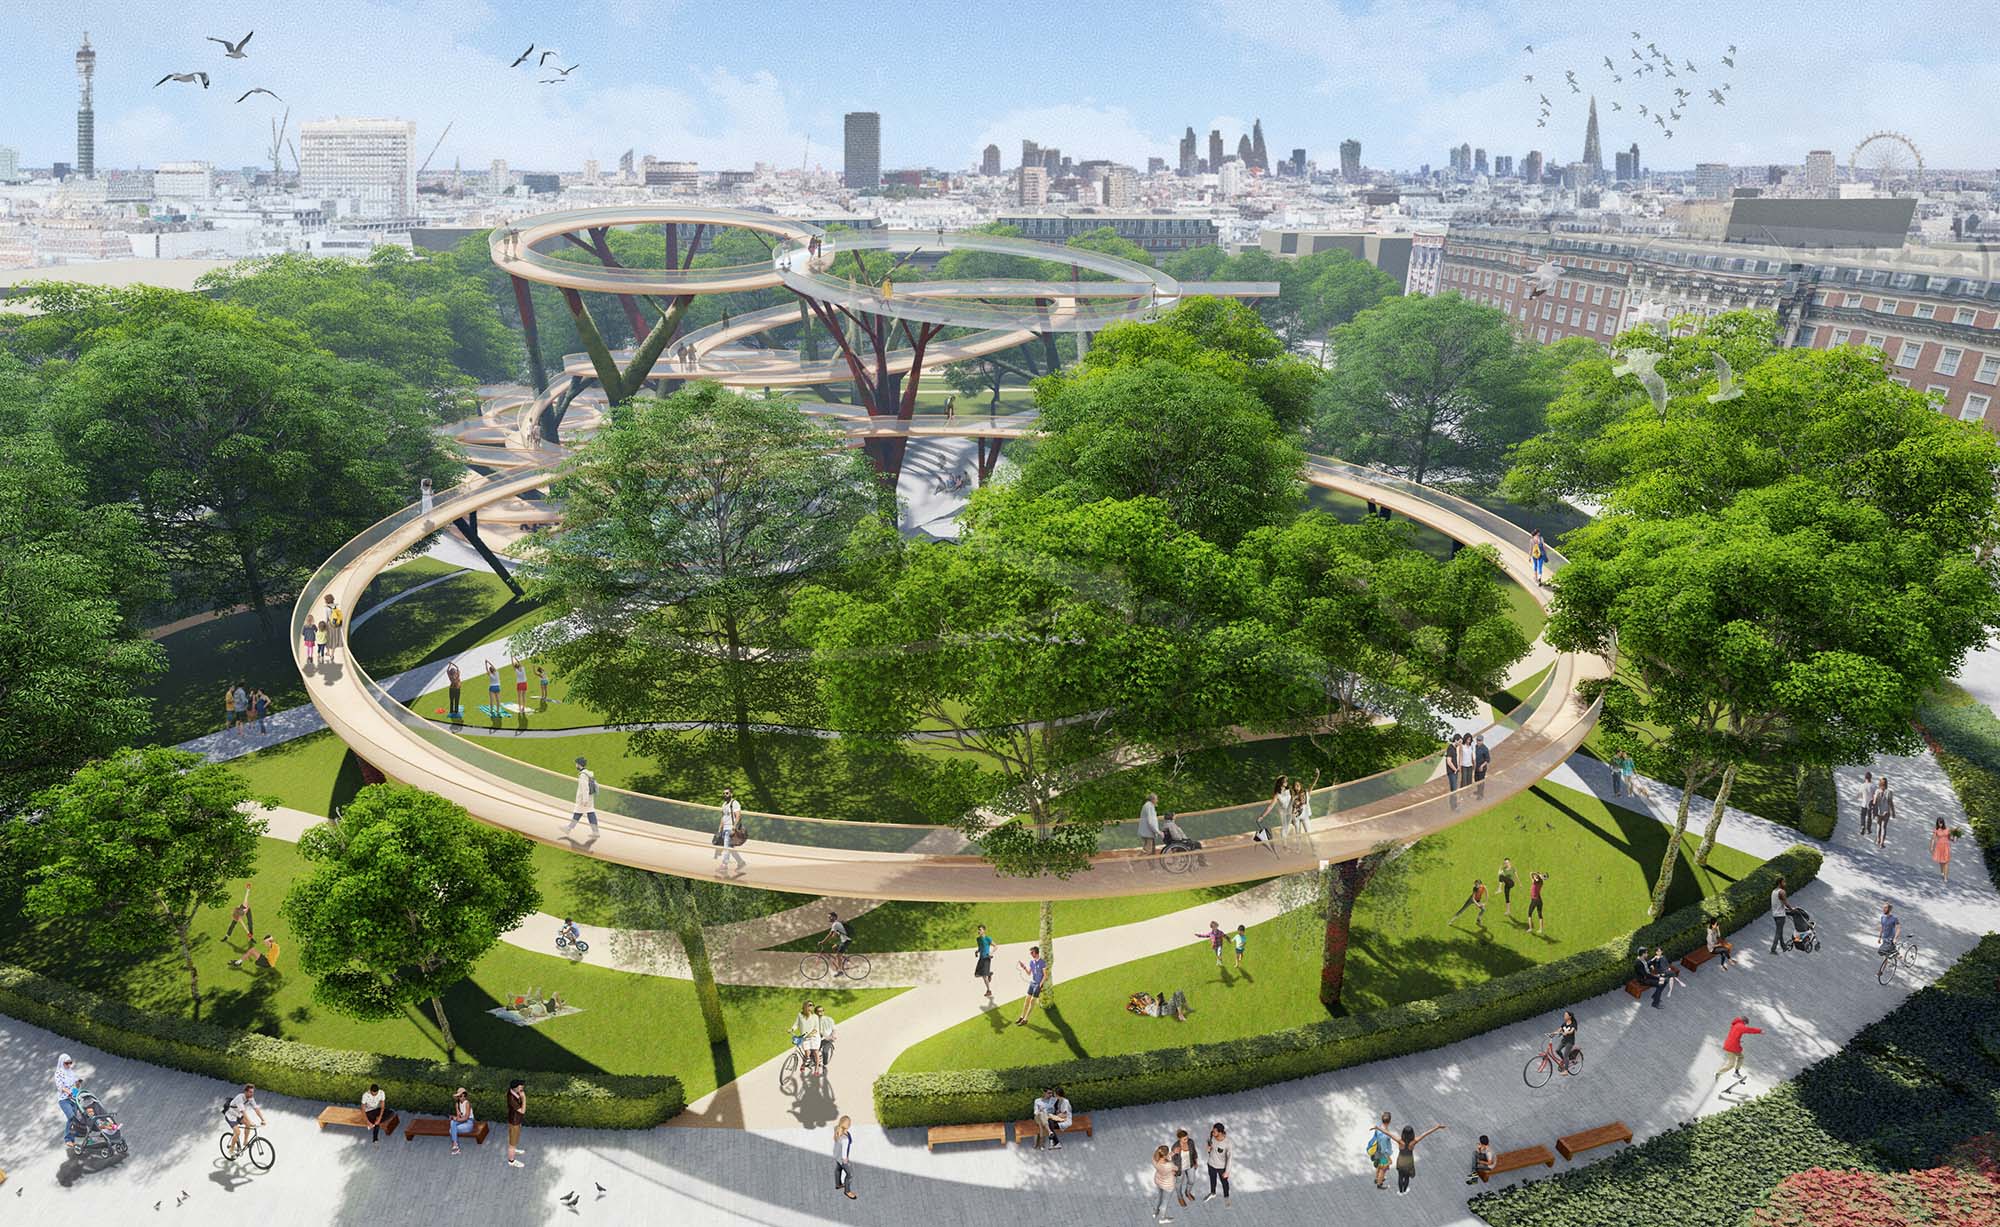 معیارهای منظرسازی landscape فضای سبز و باز | مدیریت فضای سبز شهری | کارشناسی ارشد و دکتری شهرسازی برنامه ریزی شهری طراحی شهری